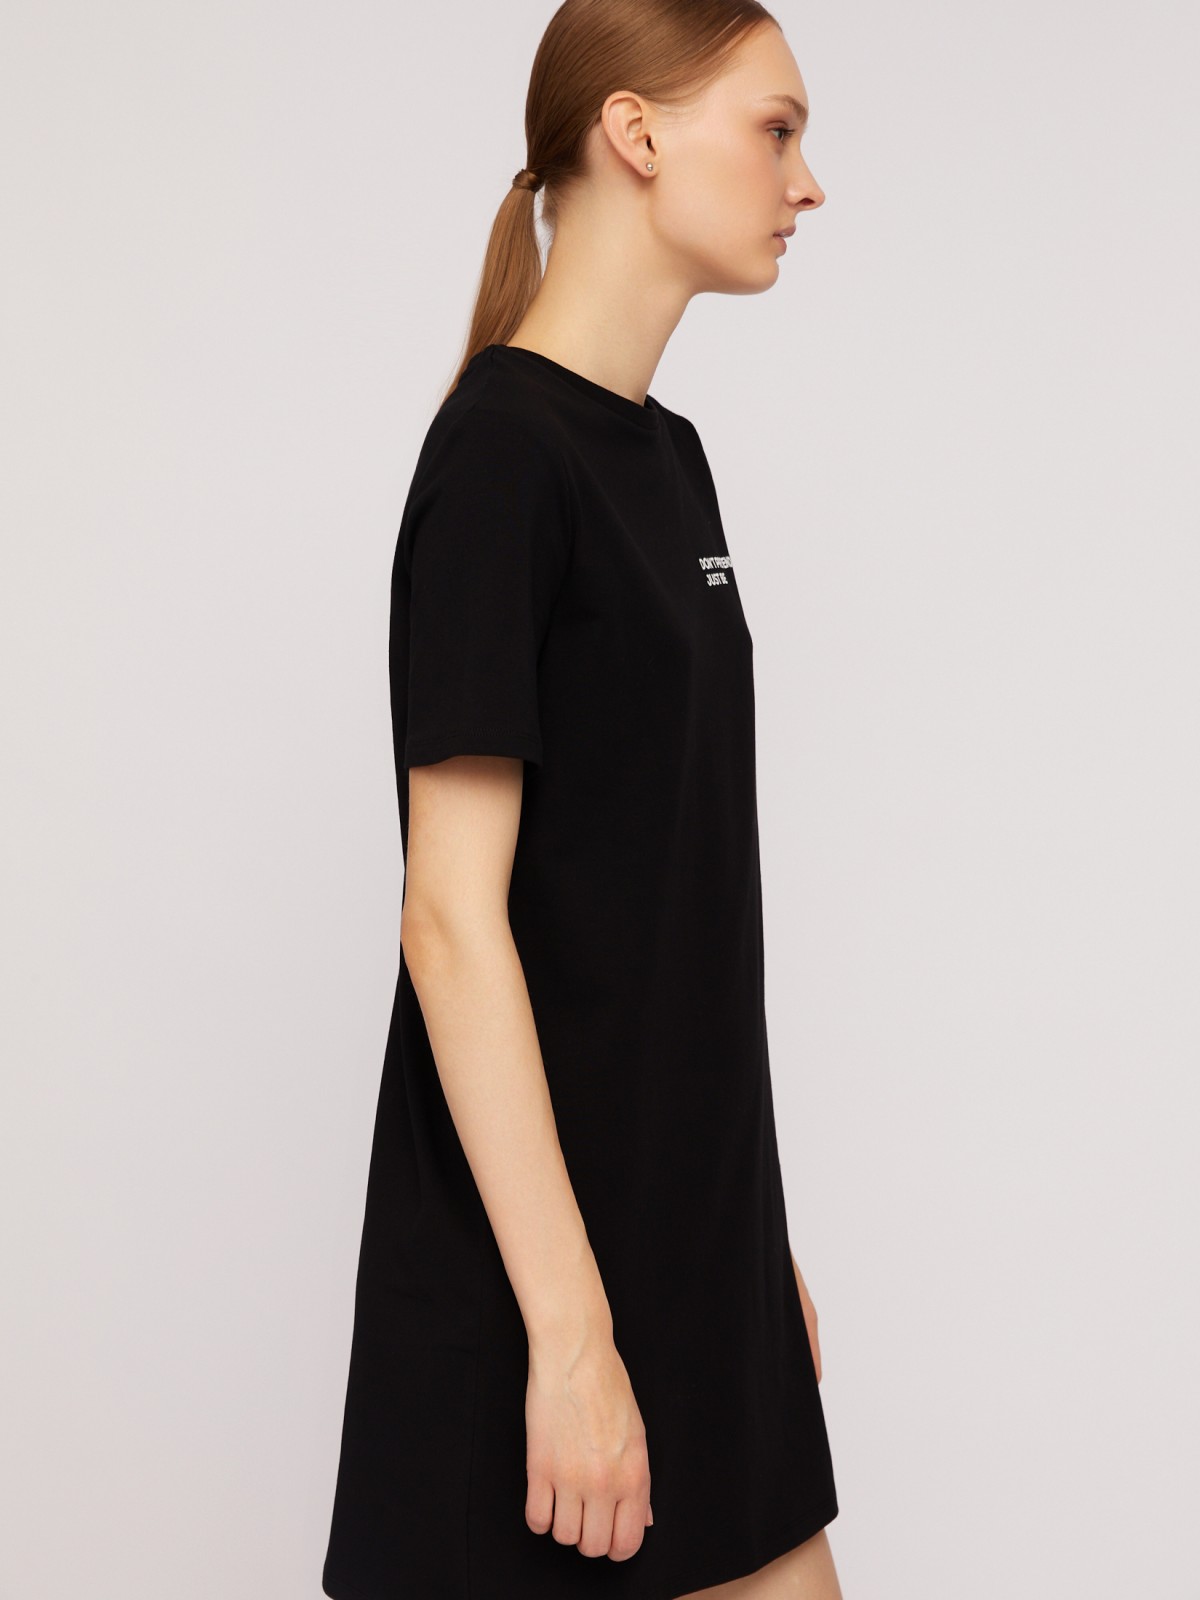 Платье-футболка из хлопка с коротким рукавом и принтом-надписью zolla N24218192022, цвет черный, размер XS - фото 5